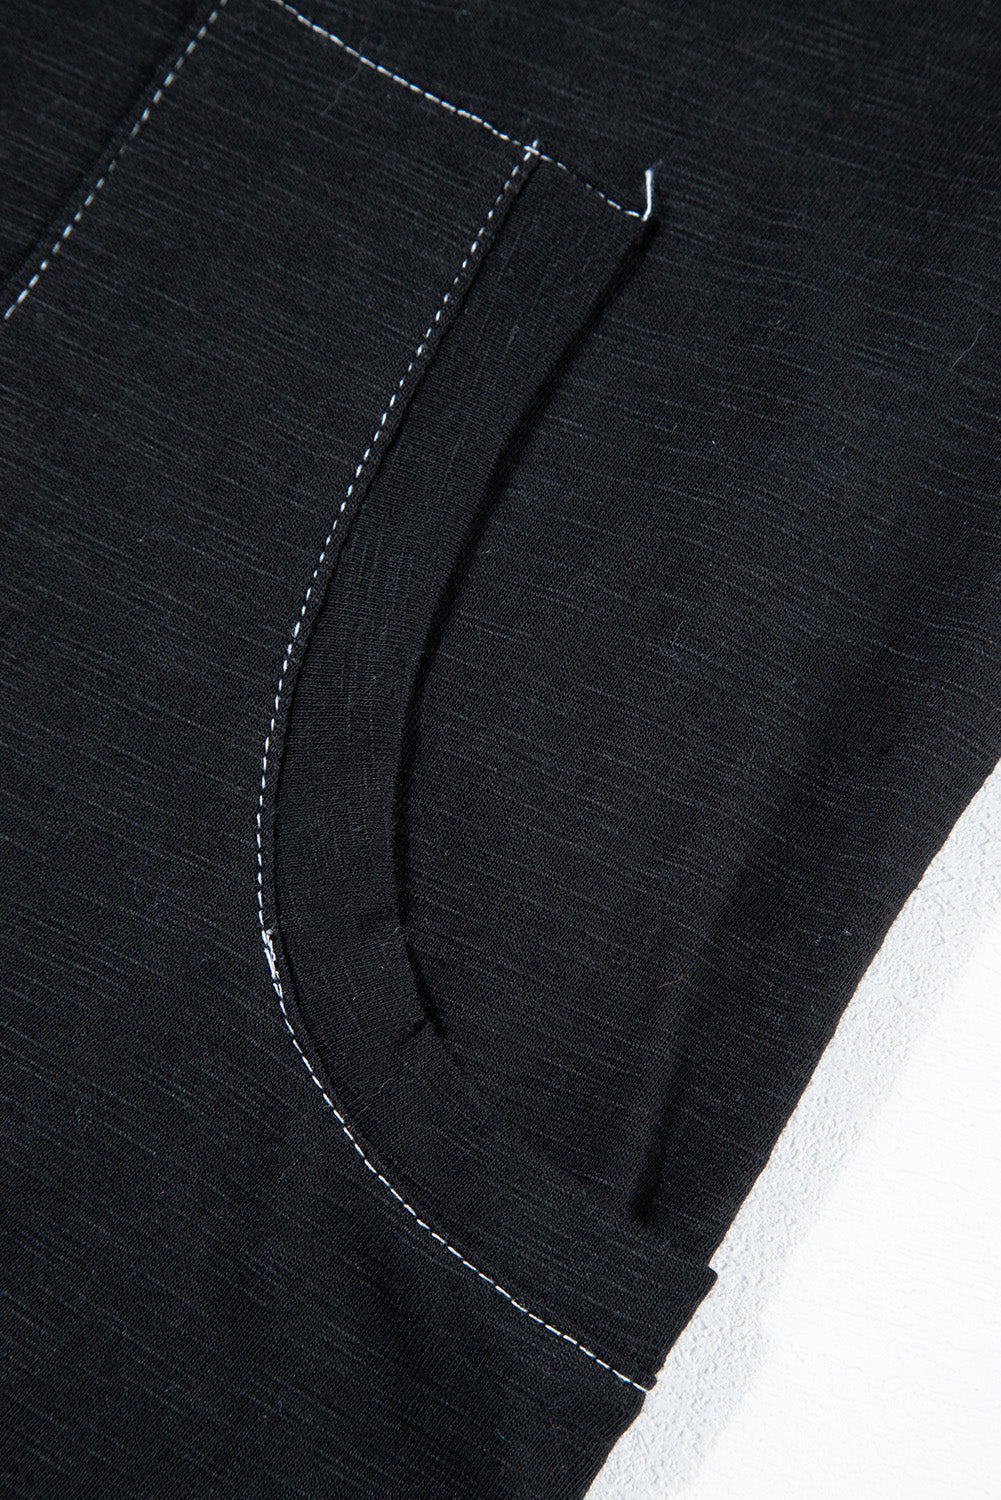 Black Flatlock Seam Detail V Neck Baggy Jumpsuit